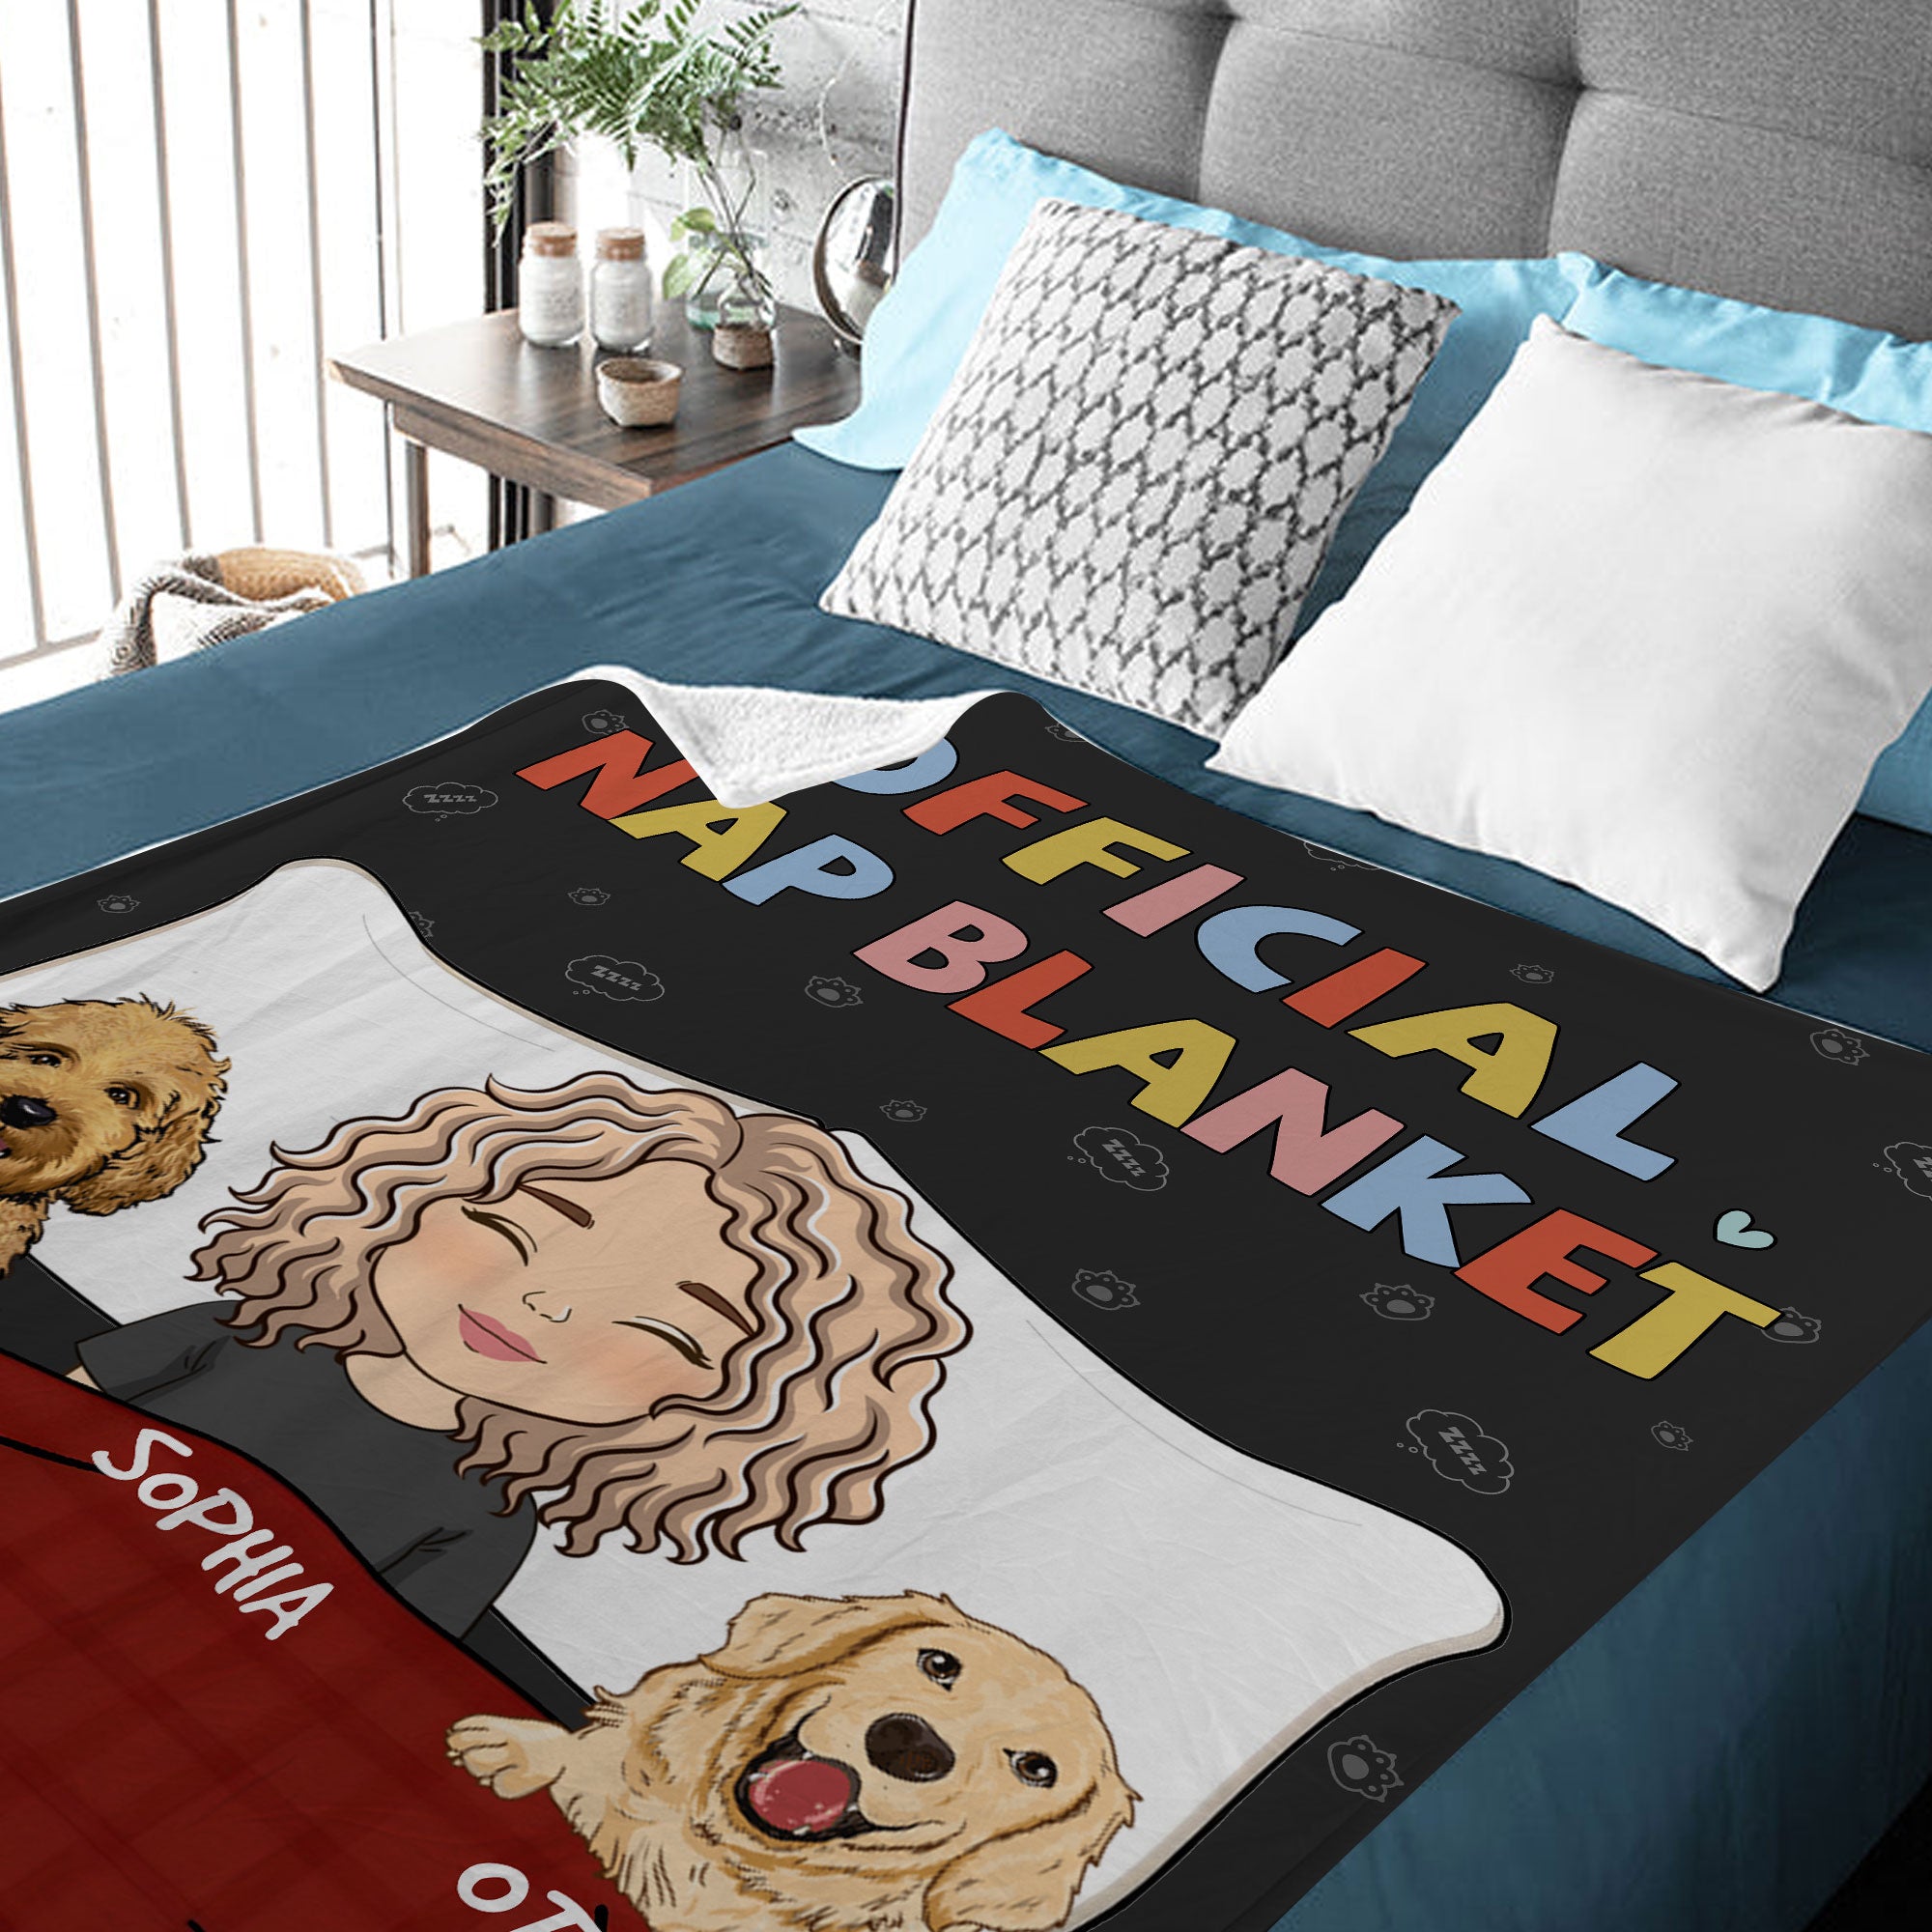 Official Nap Blanket, Custom Blanket, Personalized Fleece Blanket - Gift For Pet Lover, Christmas Gift